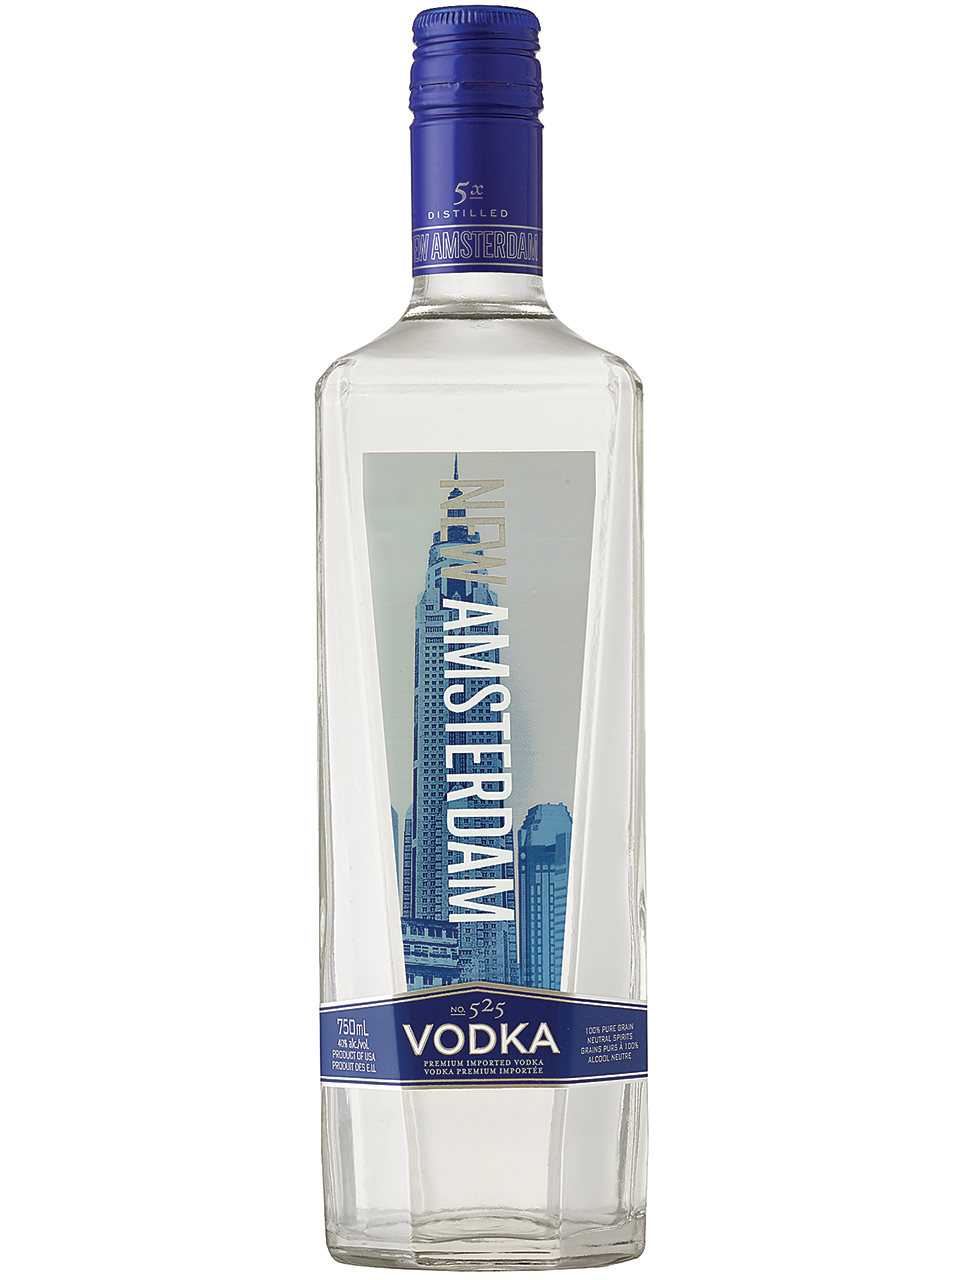 New Amsterdam Vodka Newfoundland Labrador Liquor Corporation